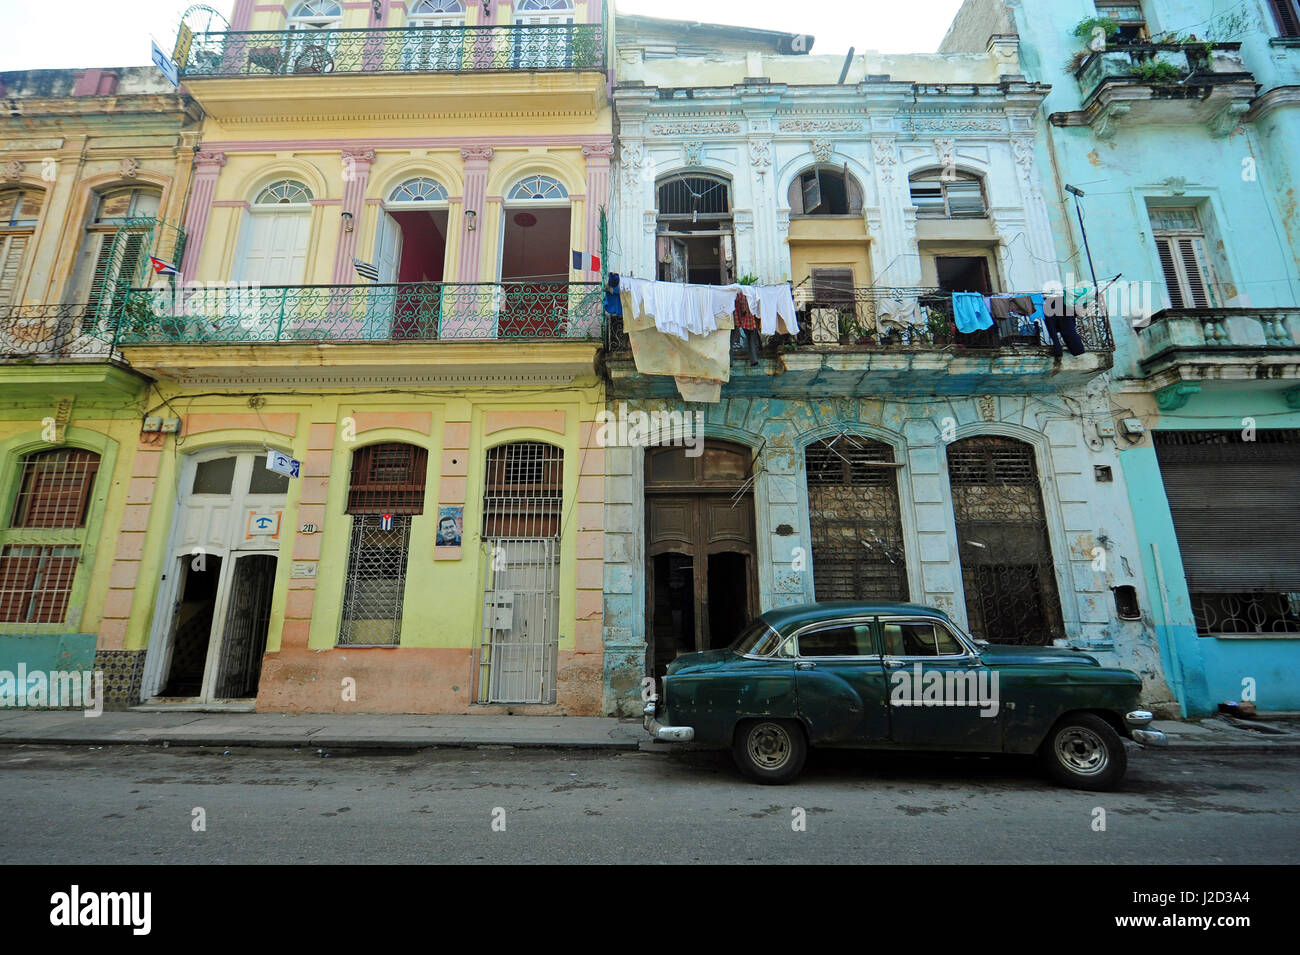 Cuba, La Habana, vecchie automobili americane guida attraverso strade coloniali Foto Stock